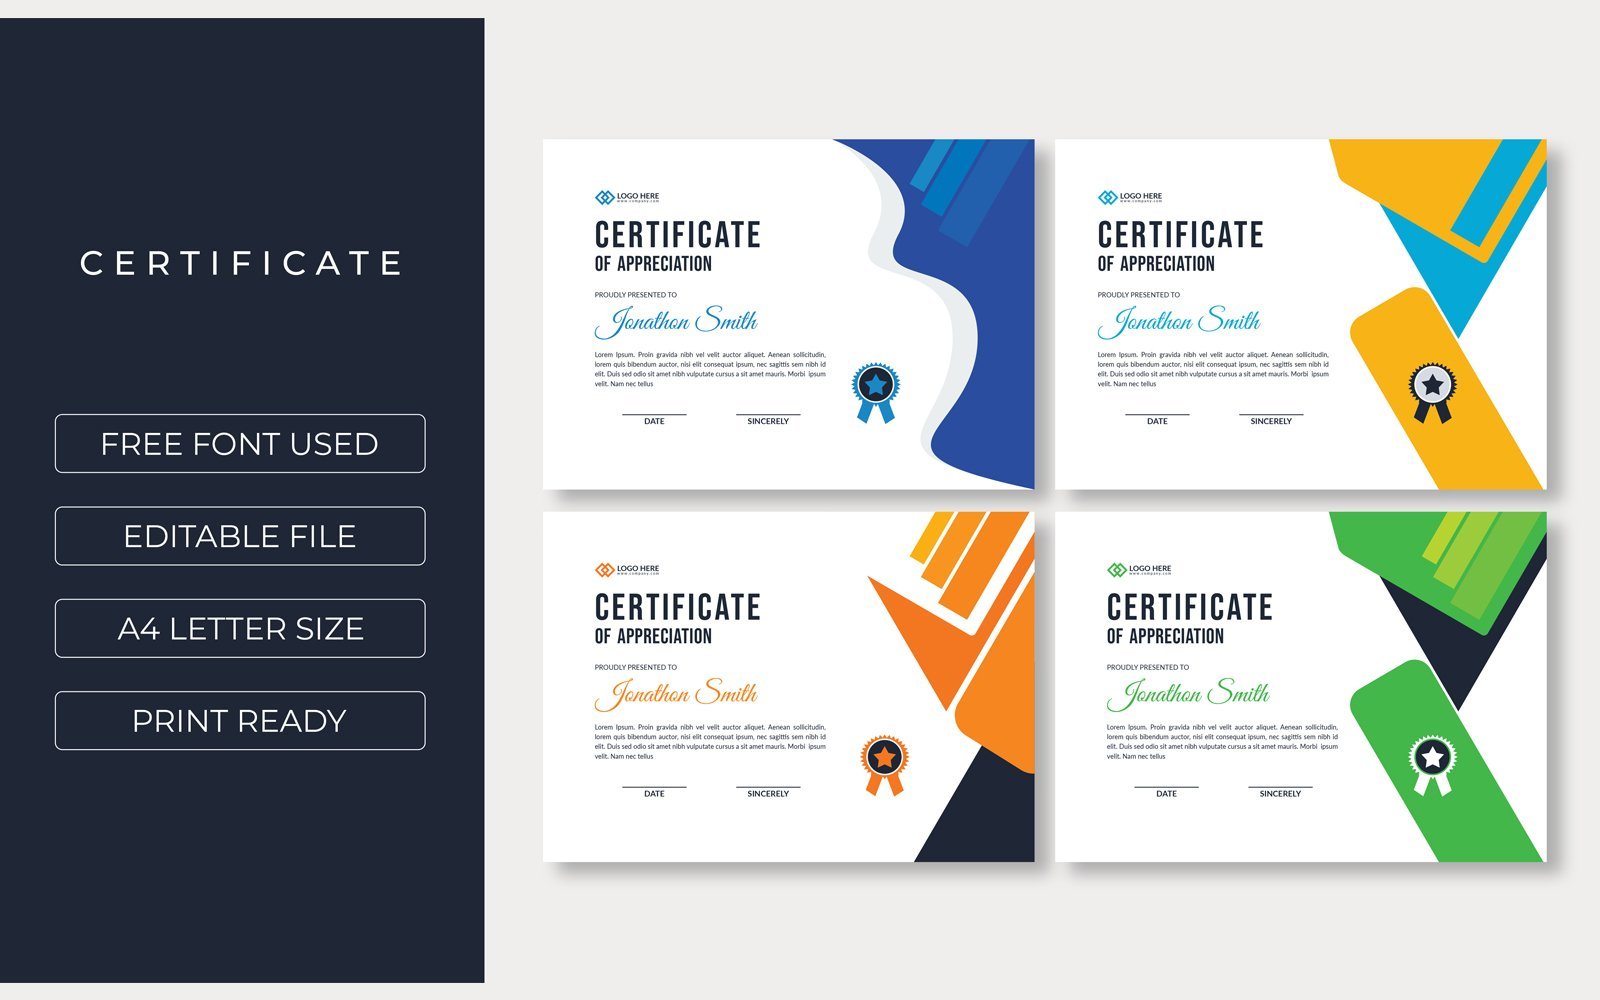 Kit Graphique #207236 Certificate Thme Divers Modles Web - Logo template Preview